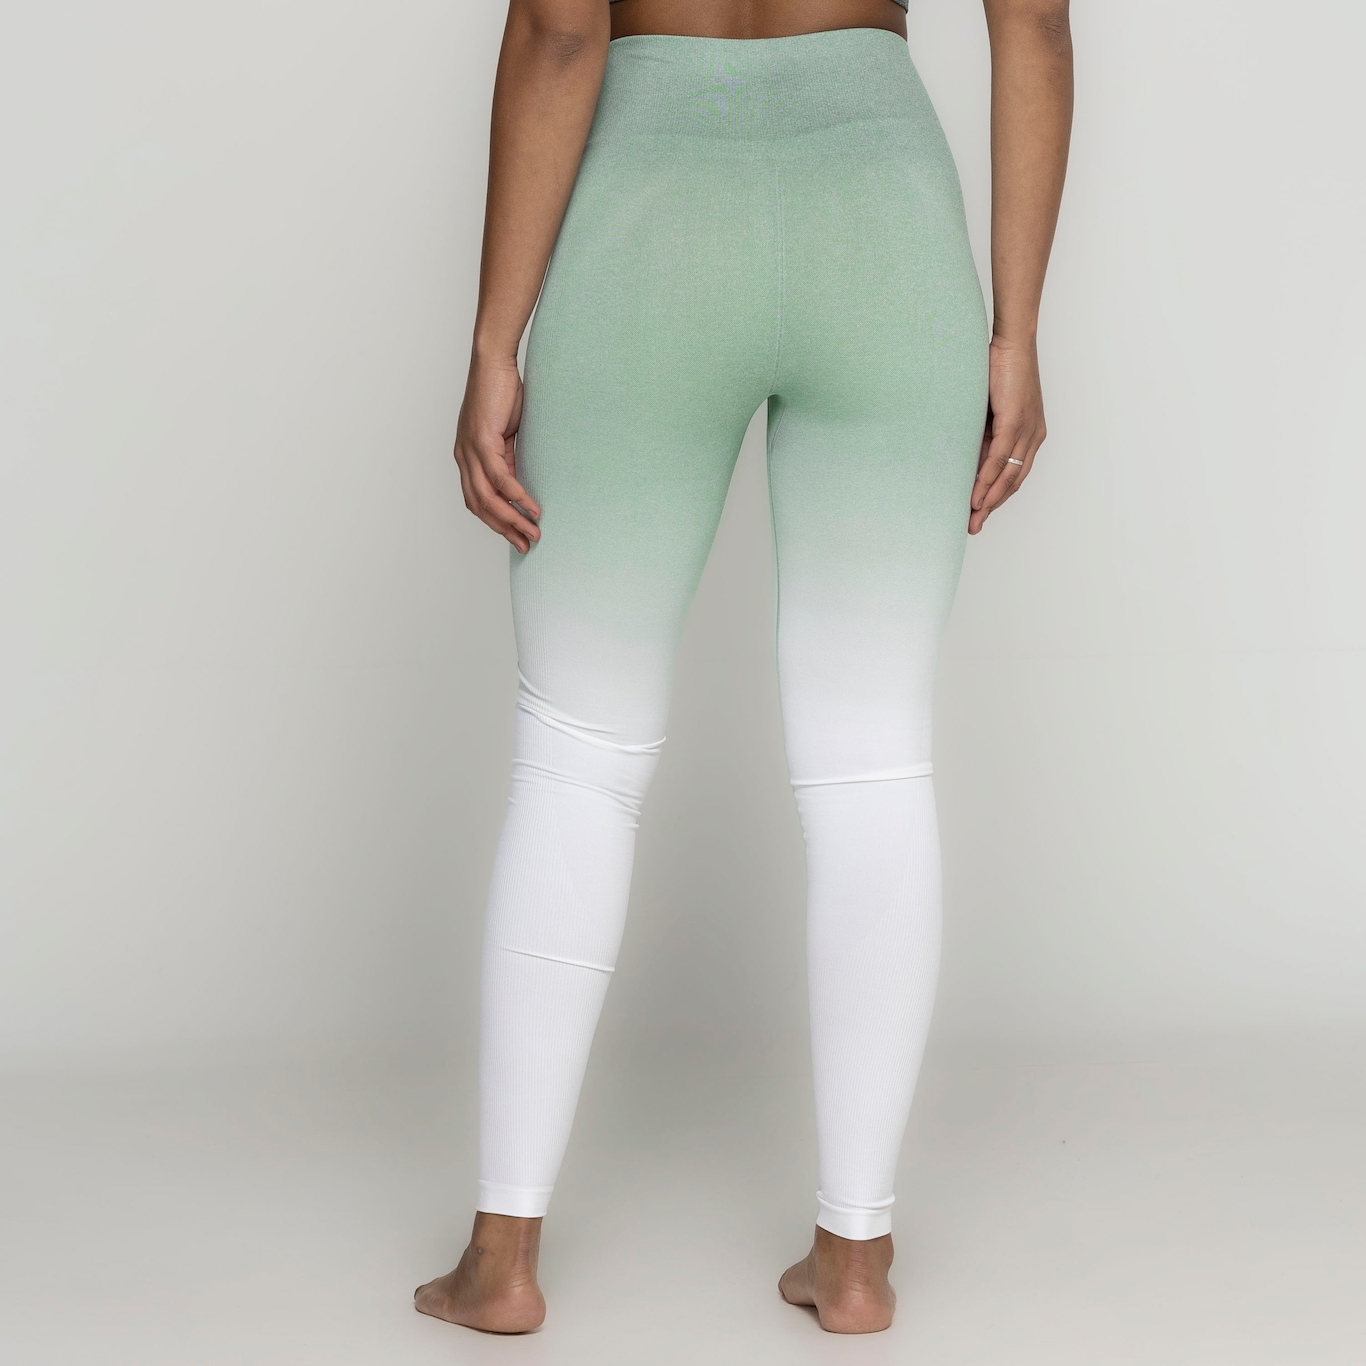 Crz yoga sem costura leggings de treino feminino 25 polegadas-com